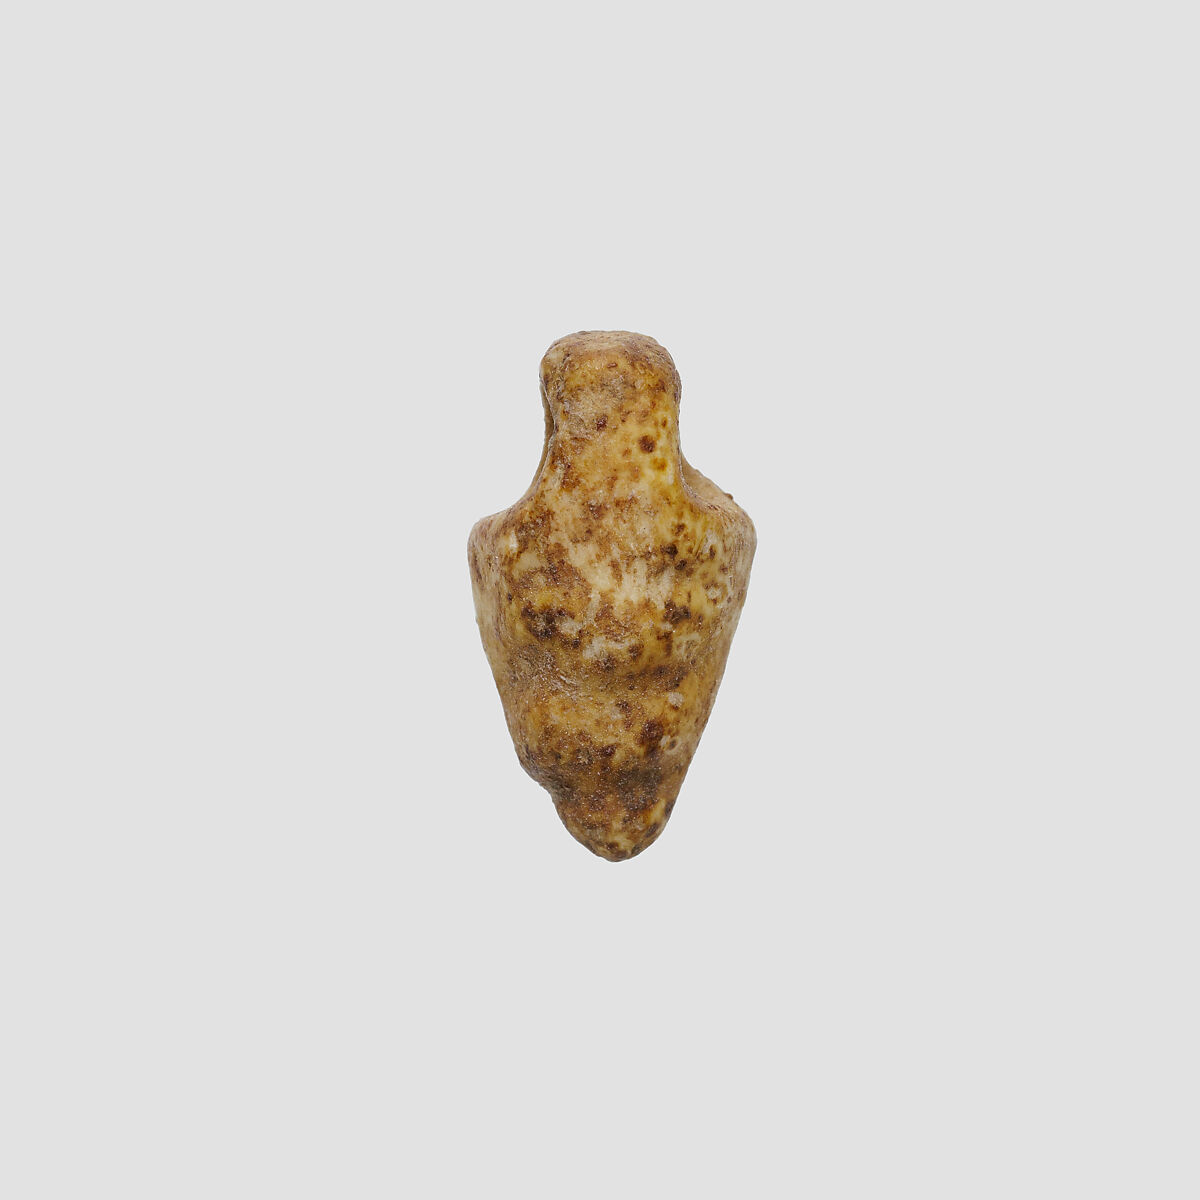 Shell (?) amulet, Ivory or bone 